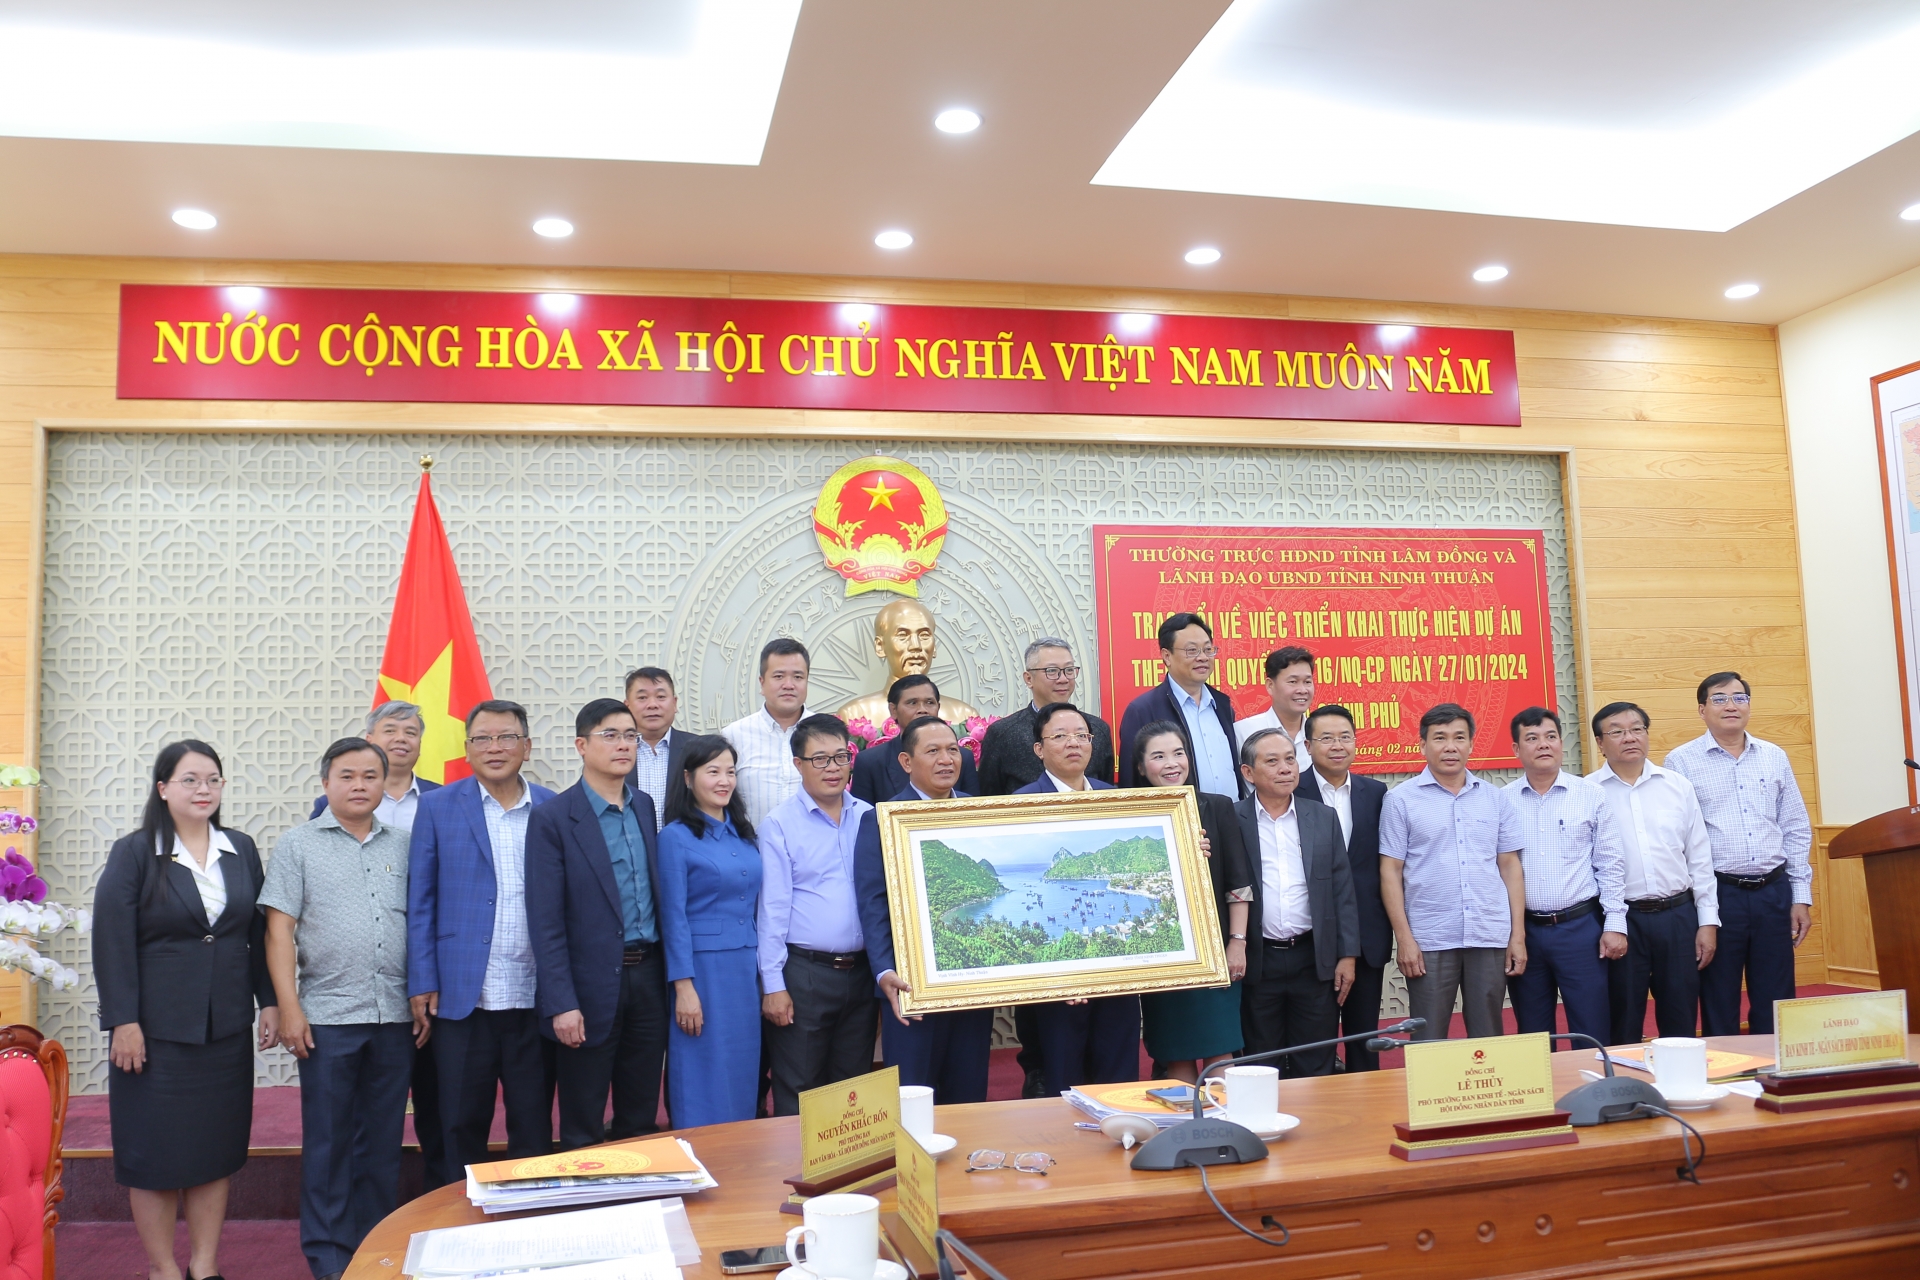 Đoàn công tác tỉnh Ninh Thuận tặng quà lưu niệm cho tỉnh Lâm Đồng

